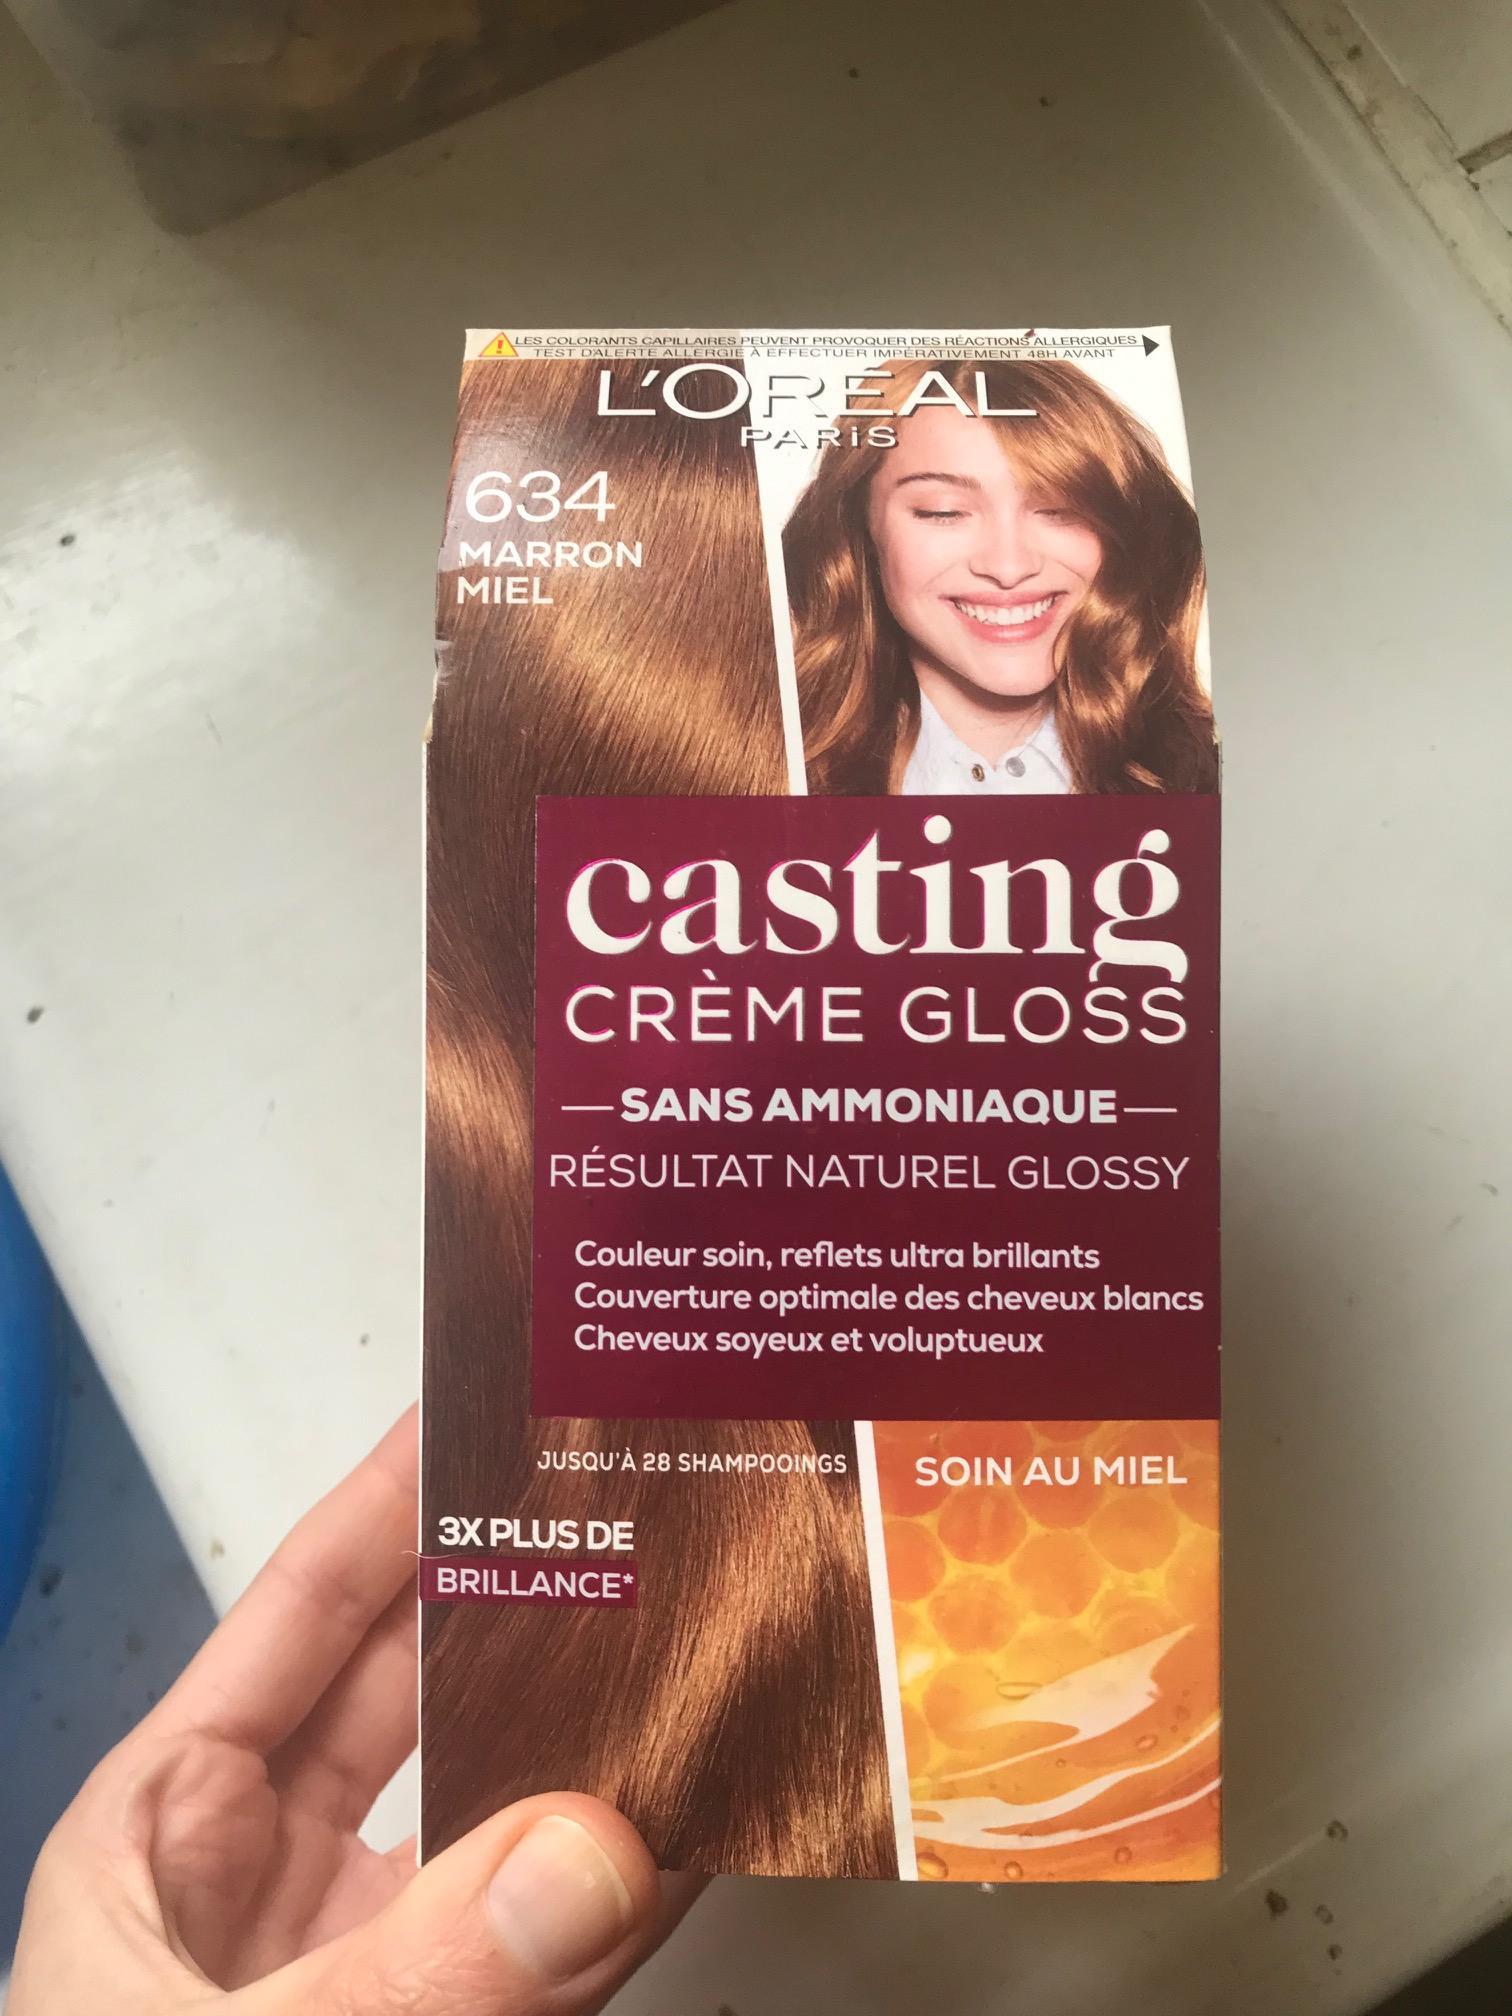 troc de troc paquet de casting crème gloss neuf marron roux image 1